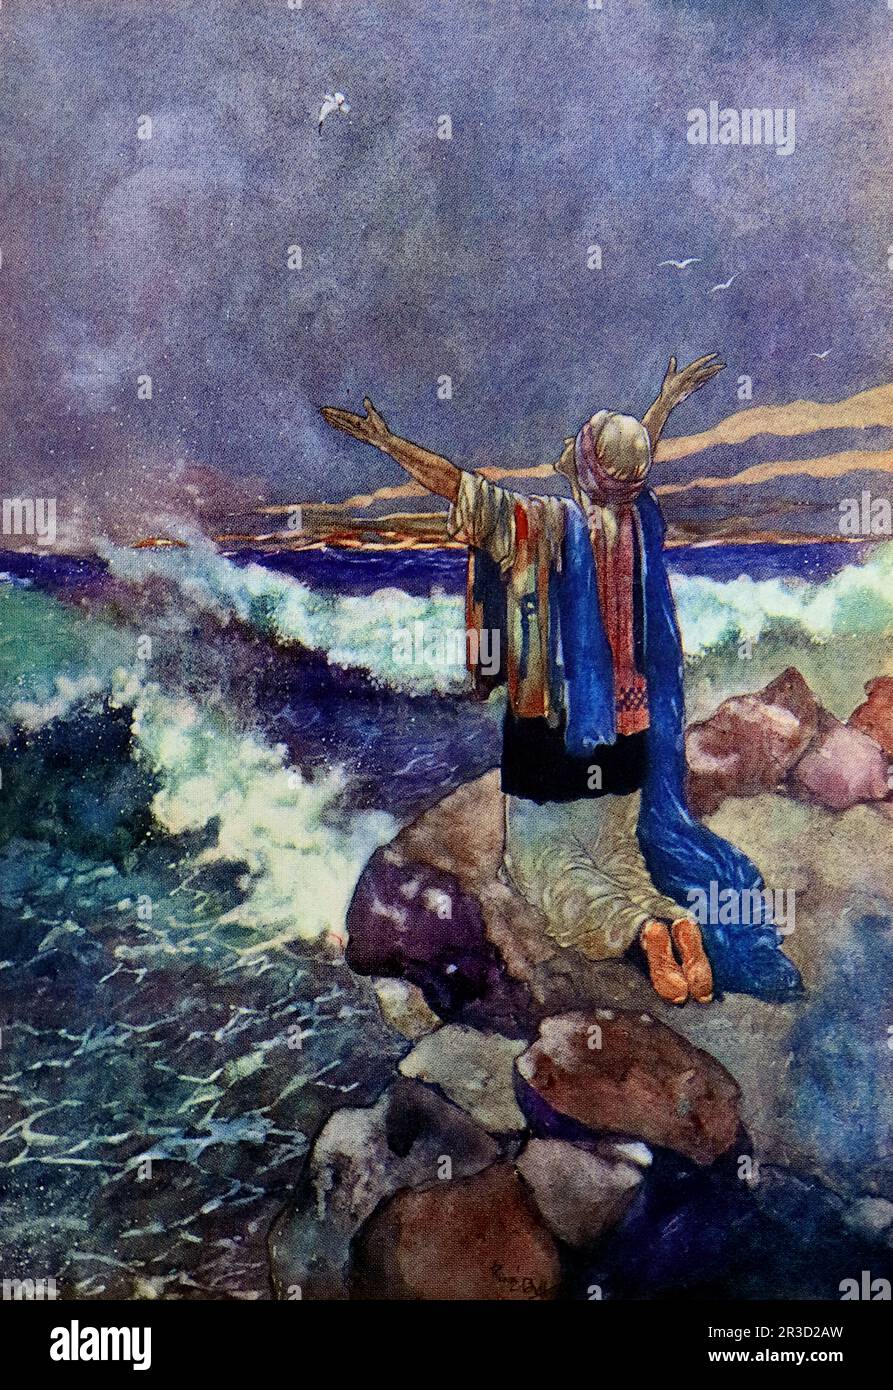 Von Rene Bull Ein Mann auf einem Felsen am tosenden Meer, seine Arme weit über dem Himmel gestreckt. Vom Rubaiyat von Omar Khayyam. Stockfoto